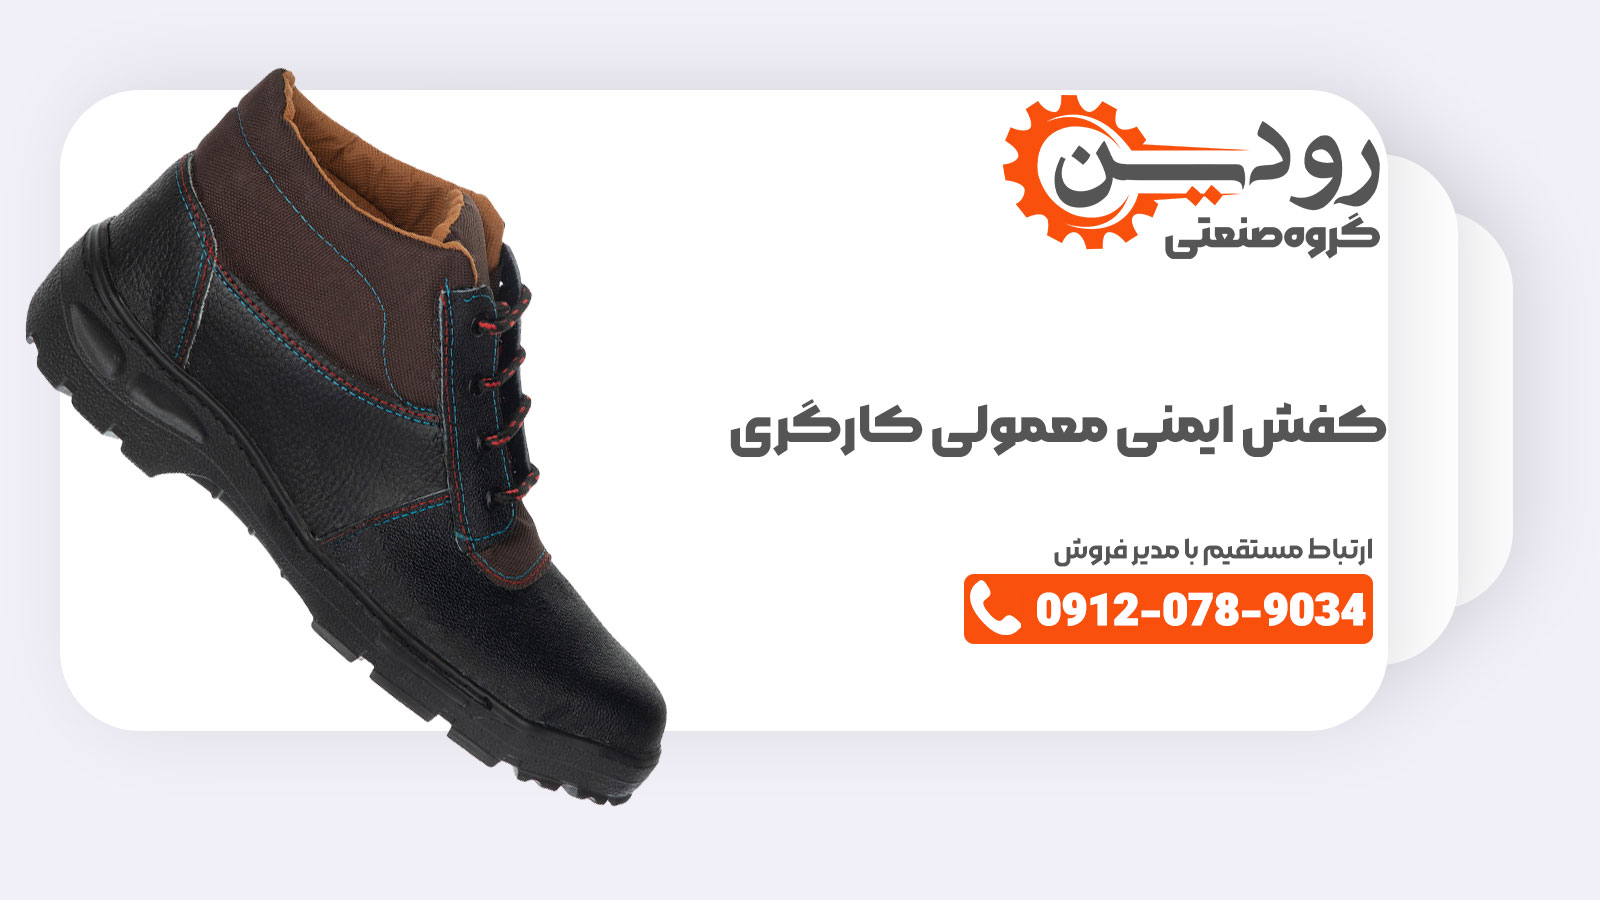 کارخانه تولید کفش ایمنی علاوه بر اینکه انواع کفش ایمنی را به تولید می رساند می تواند کفش کارگری را به صورت سفارشی برای مشتریان تولید کند.